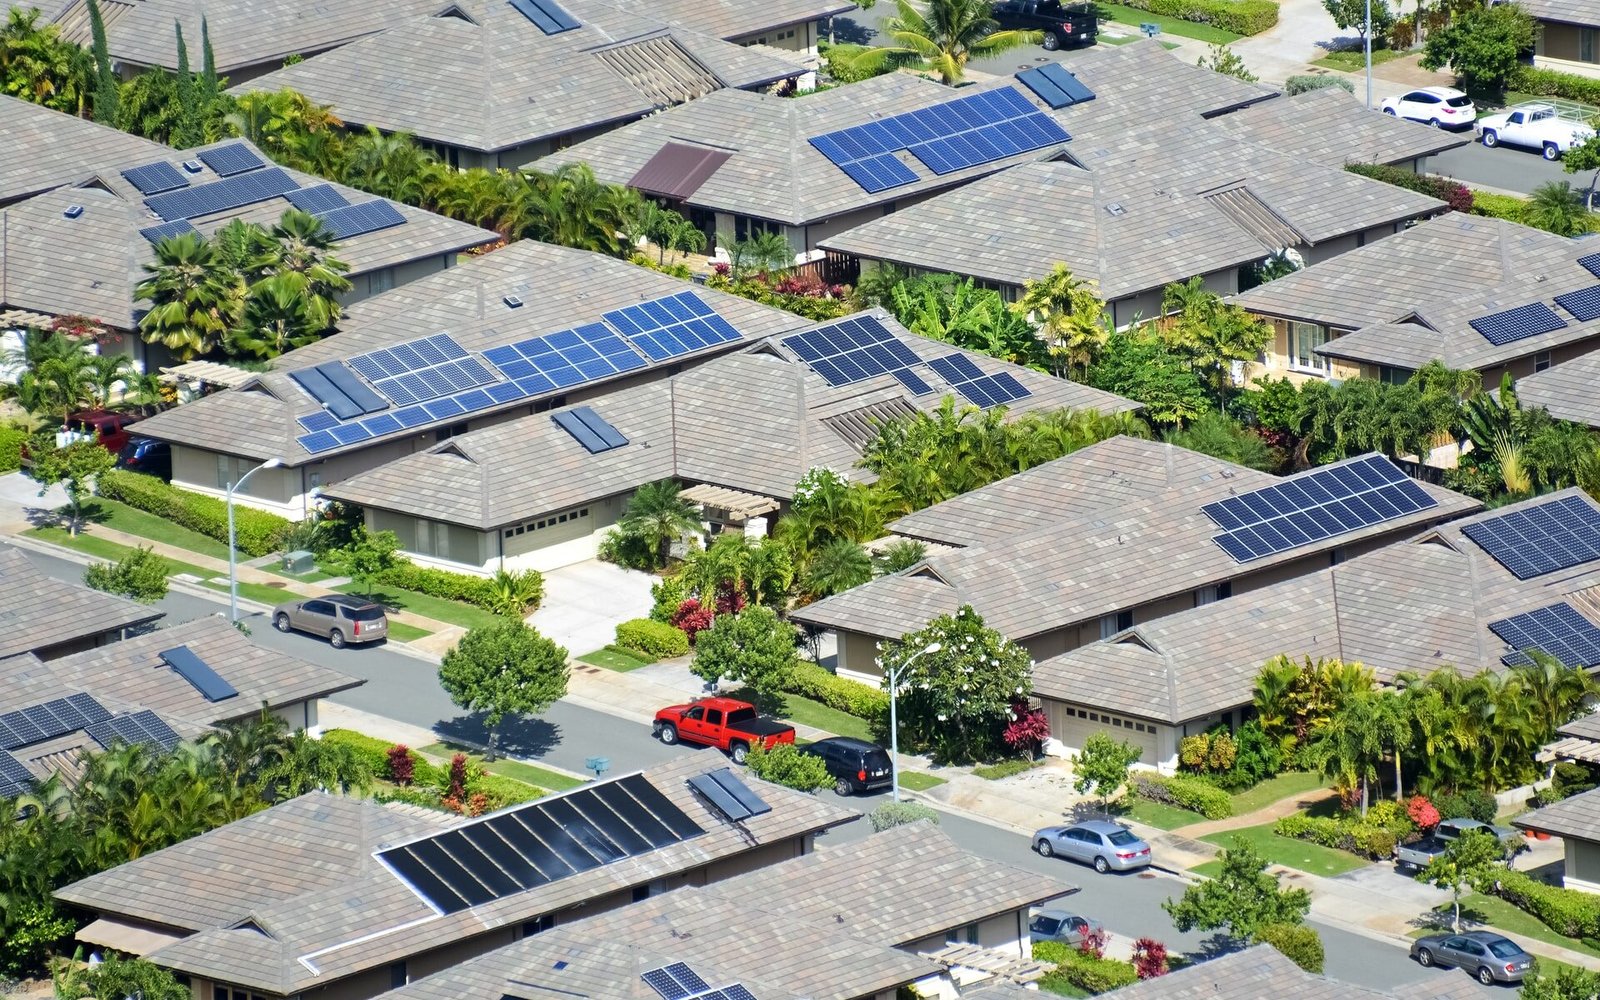 bairro repleto de casas com placa de energia solar residencial